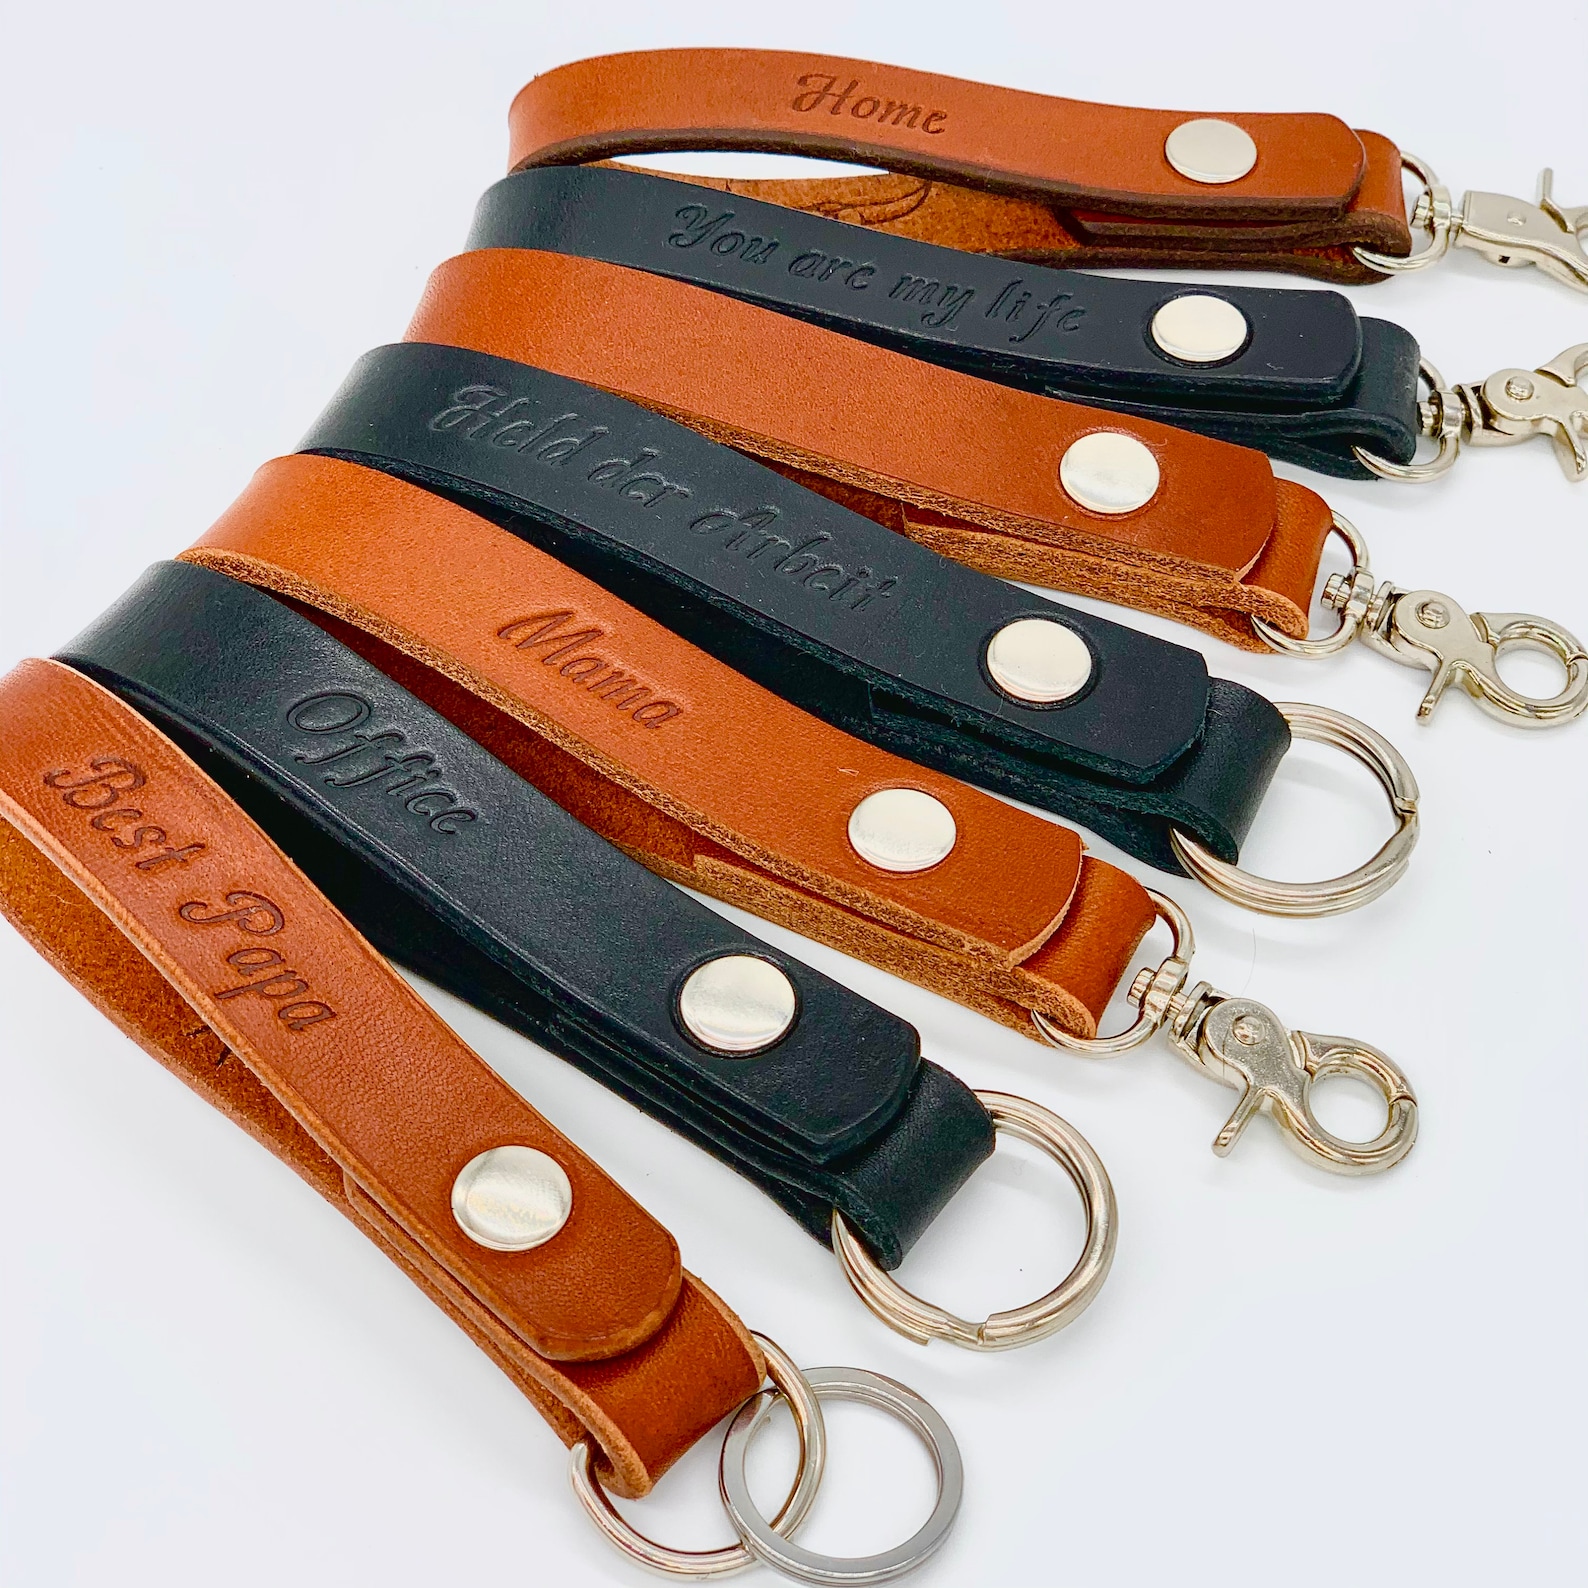 Keychain Lanyard Leather Personalized Handmade | Etsy